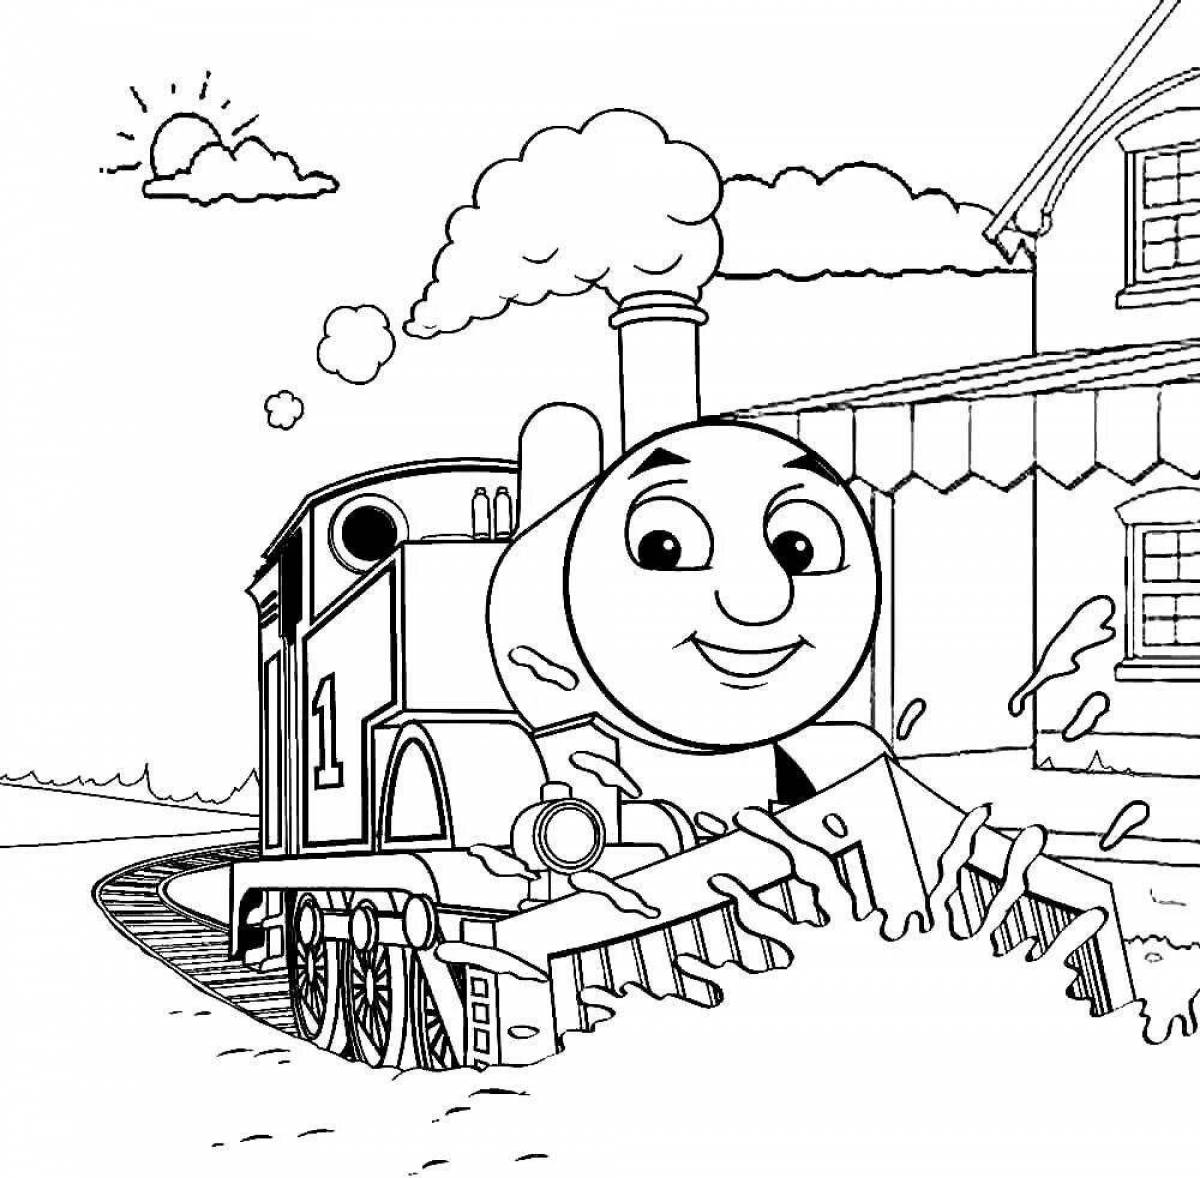 Thomas' exquisite locomotive coloring book